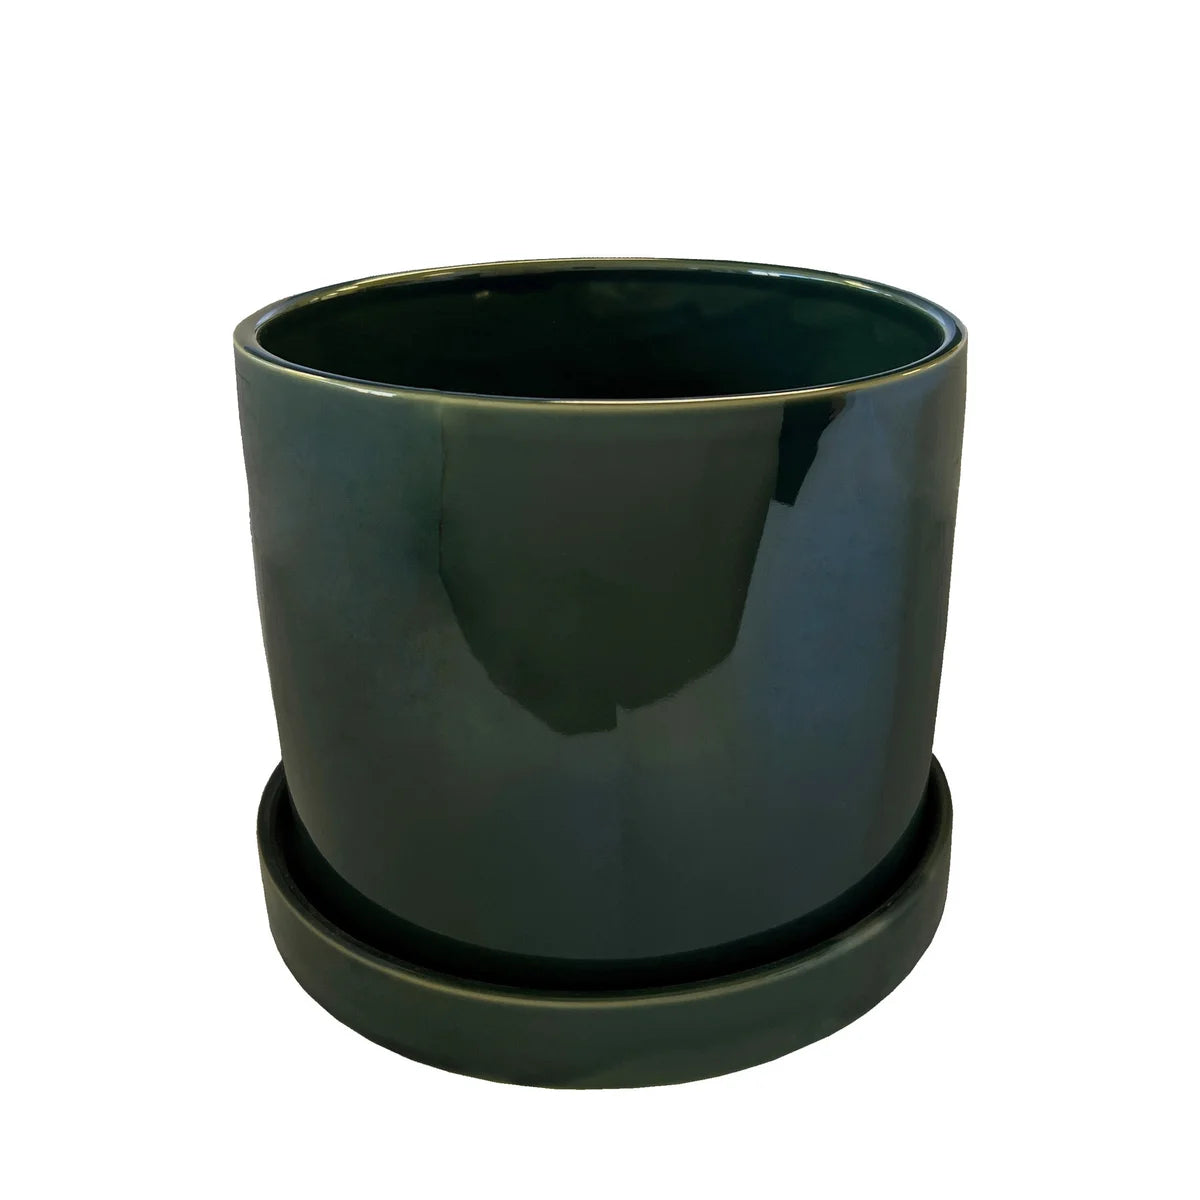 Pot Capri pot with saucer green - 12.5x10.25"